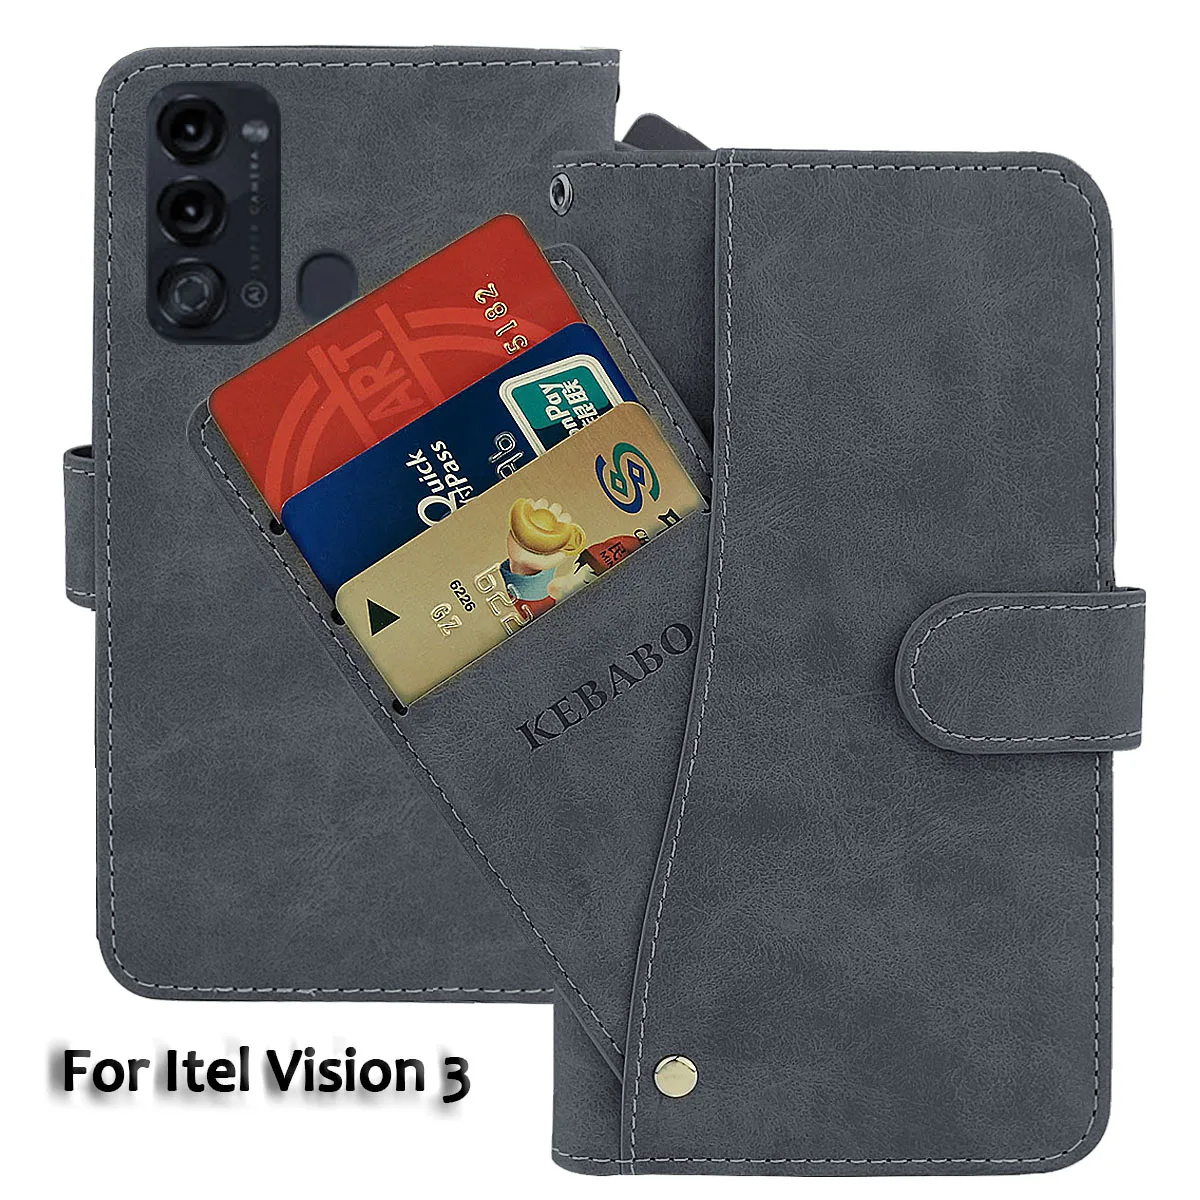 

Кожаный чехол-кошелек для Itel Vision 3, модный роскошный флип-чехол 6,6 дюйма с передней картой Vision 3, магнитные чехлы для телефонов